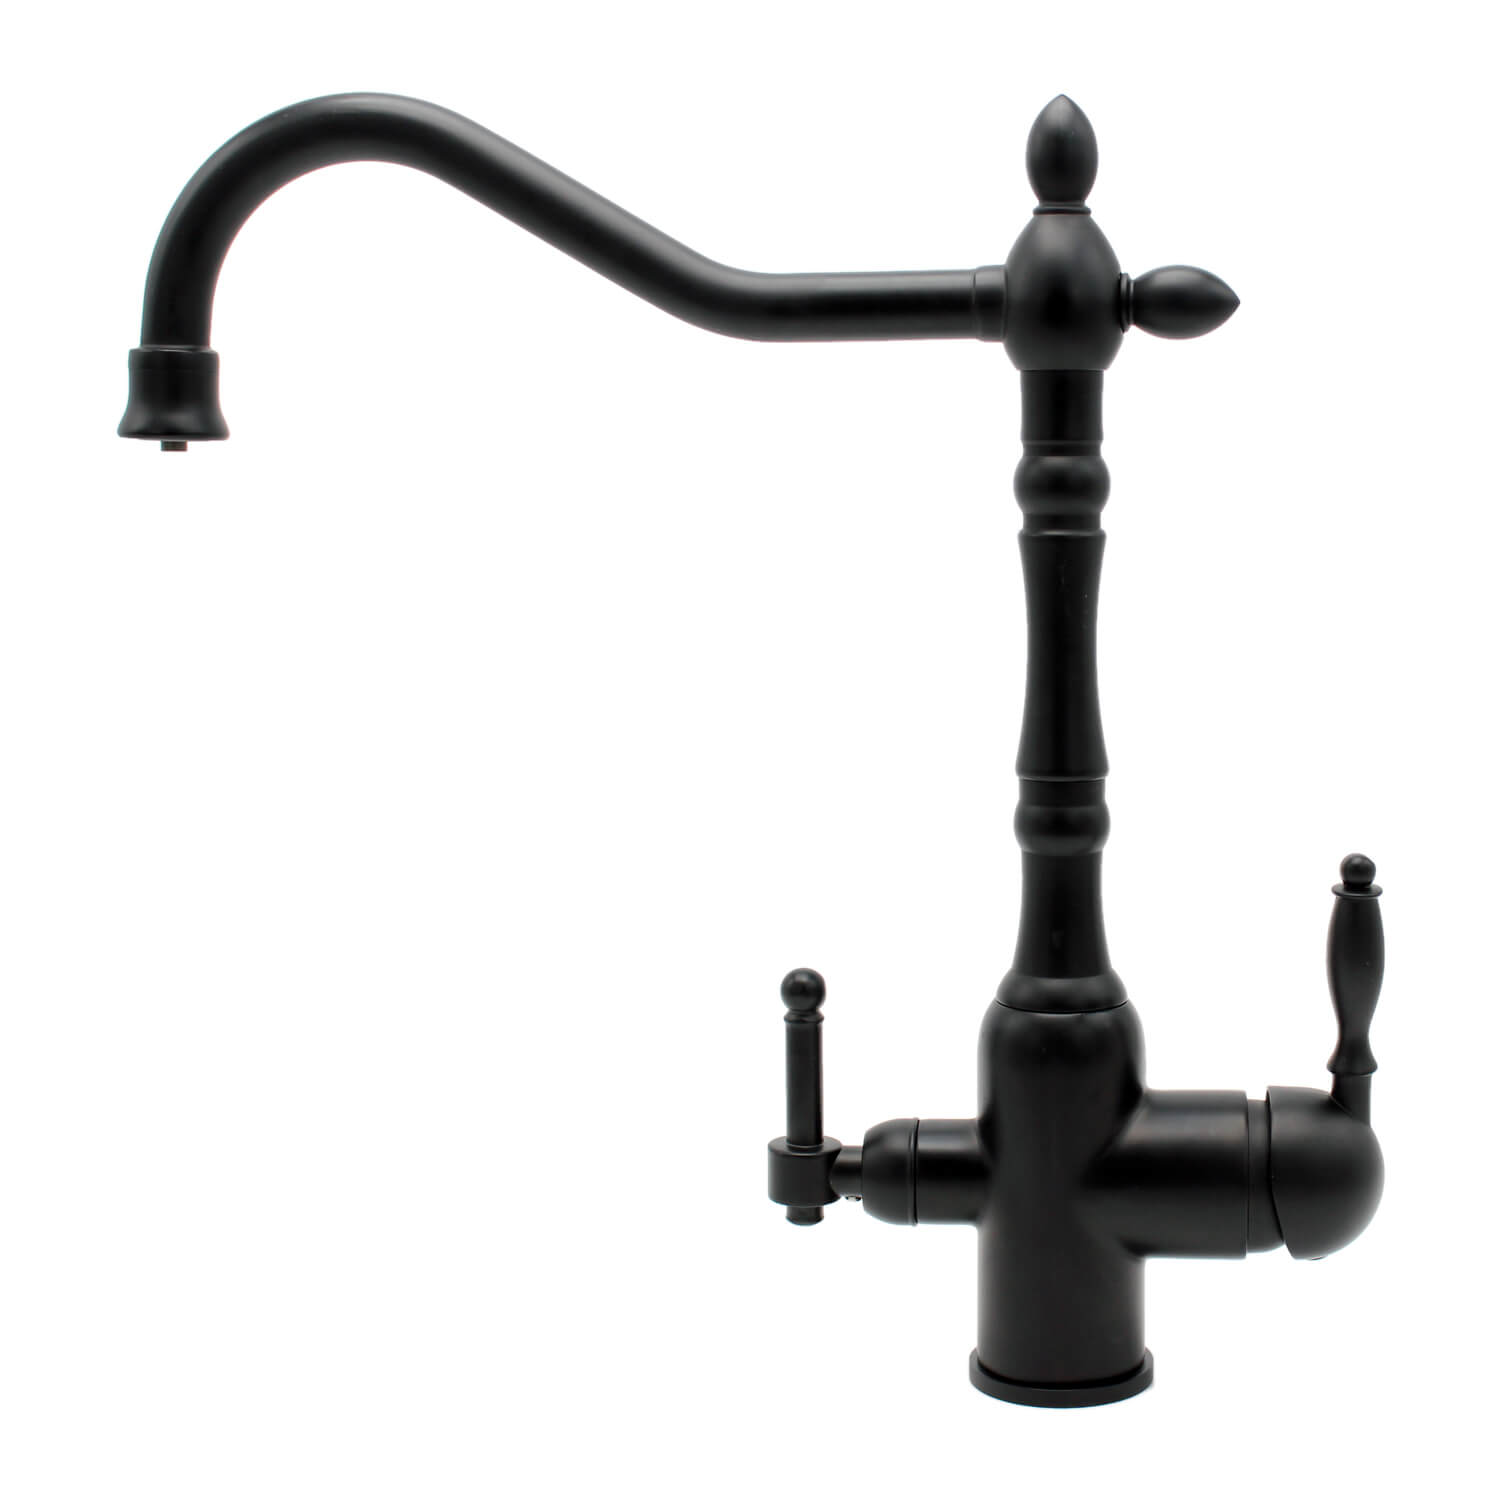 Triflow tap black faucet